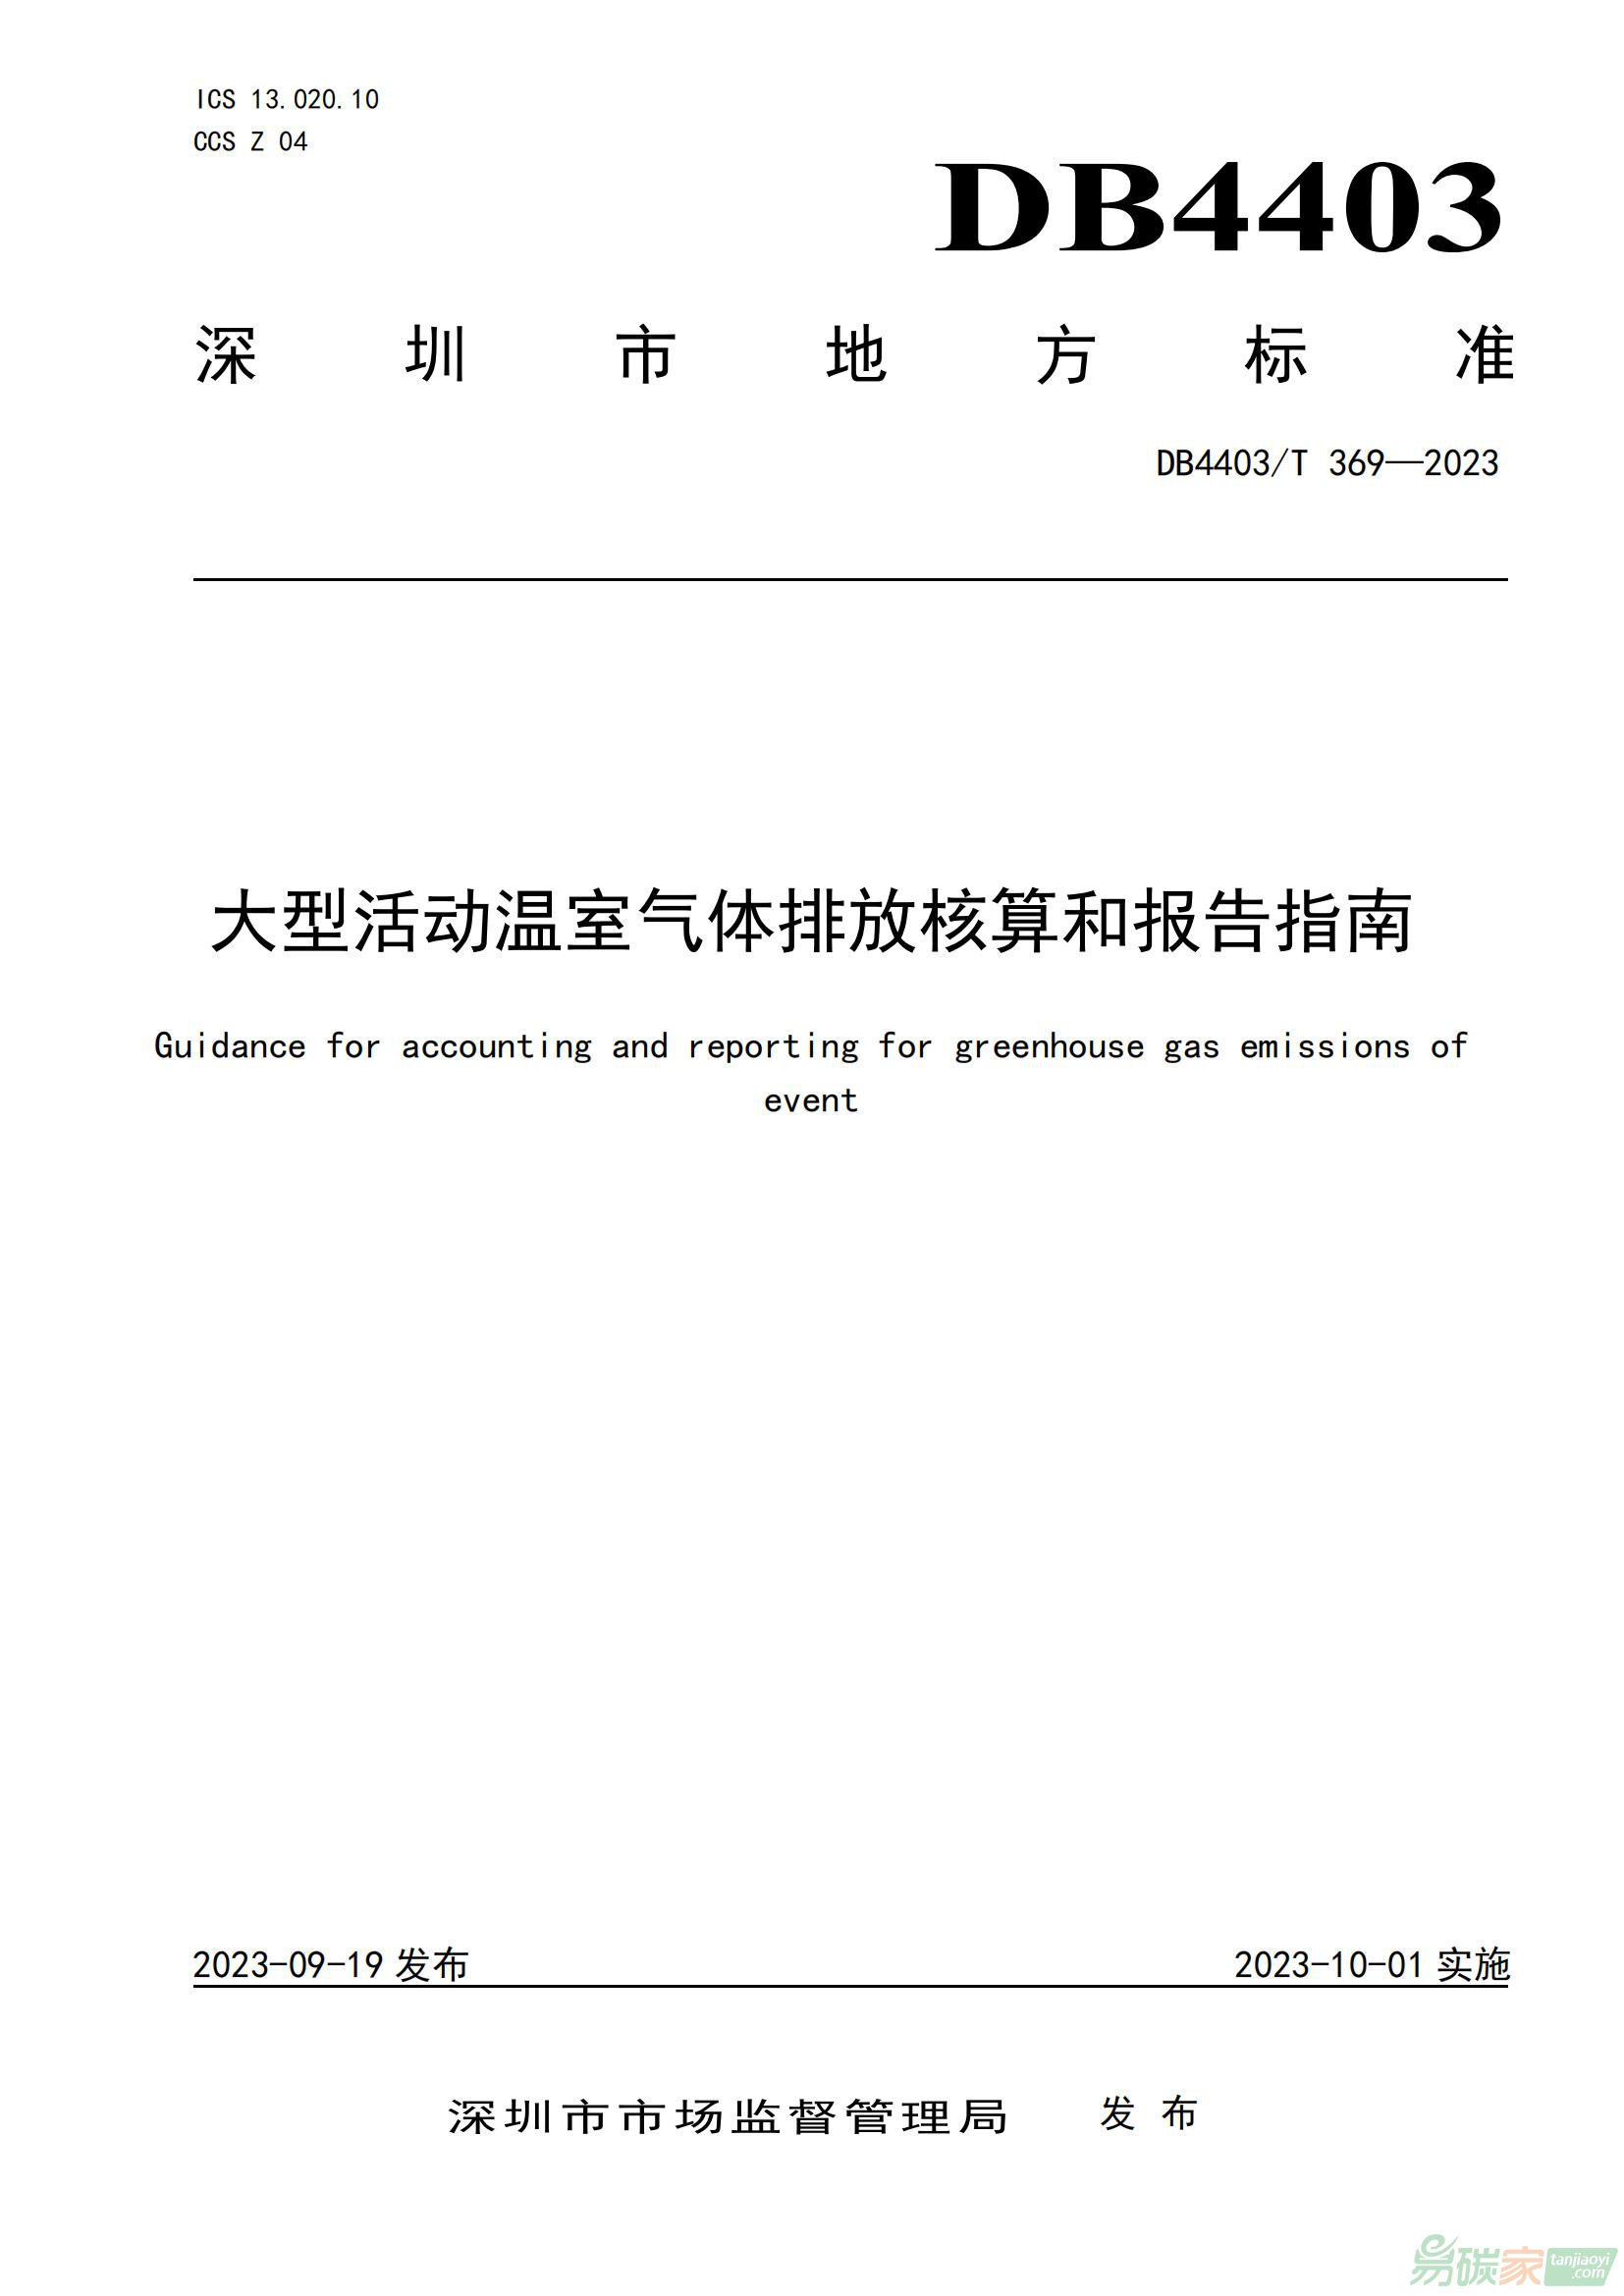 深圳市地方标准DB4403T 369—2023《大型活动温室气体排放核算和报告指南》